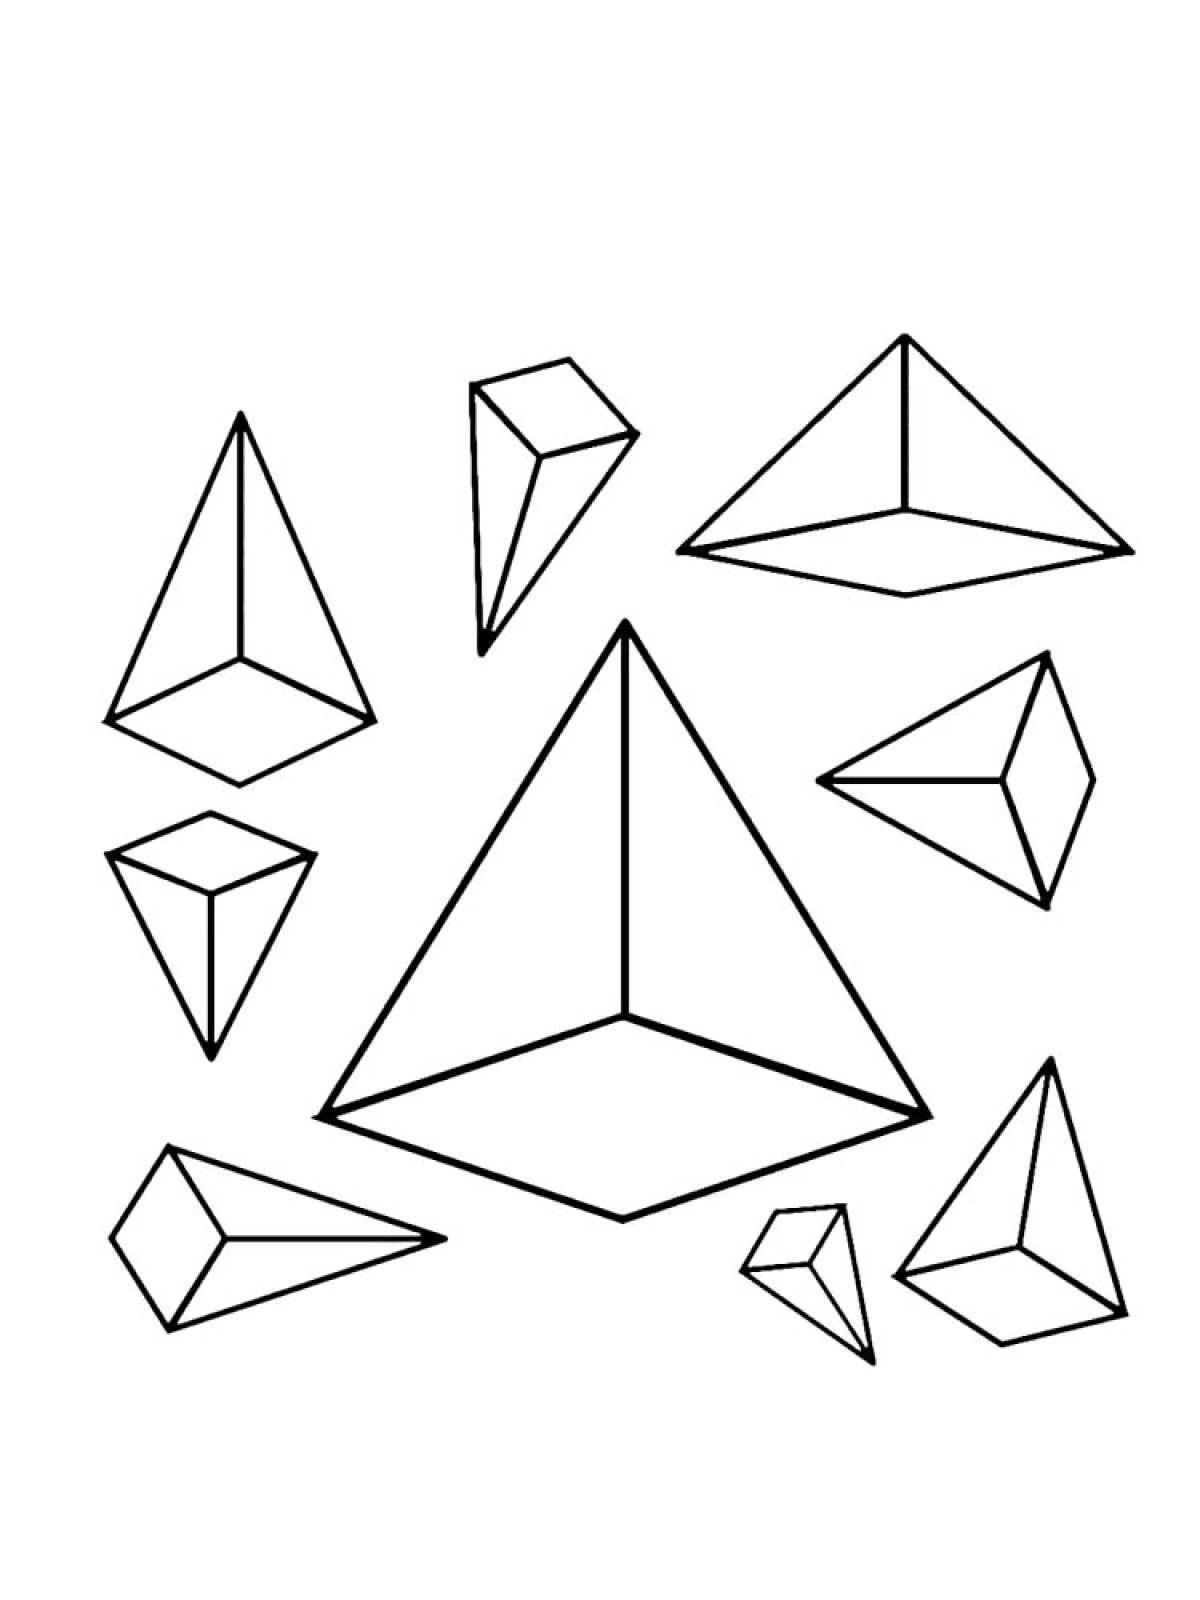 Geometric shapes 20